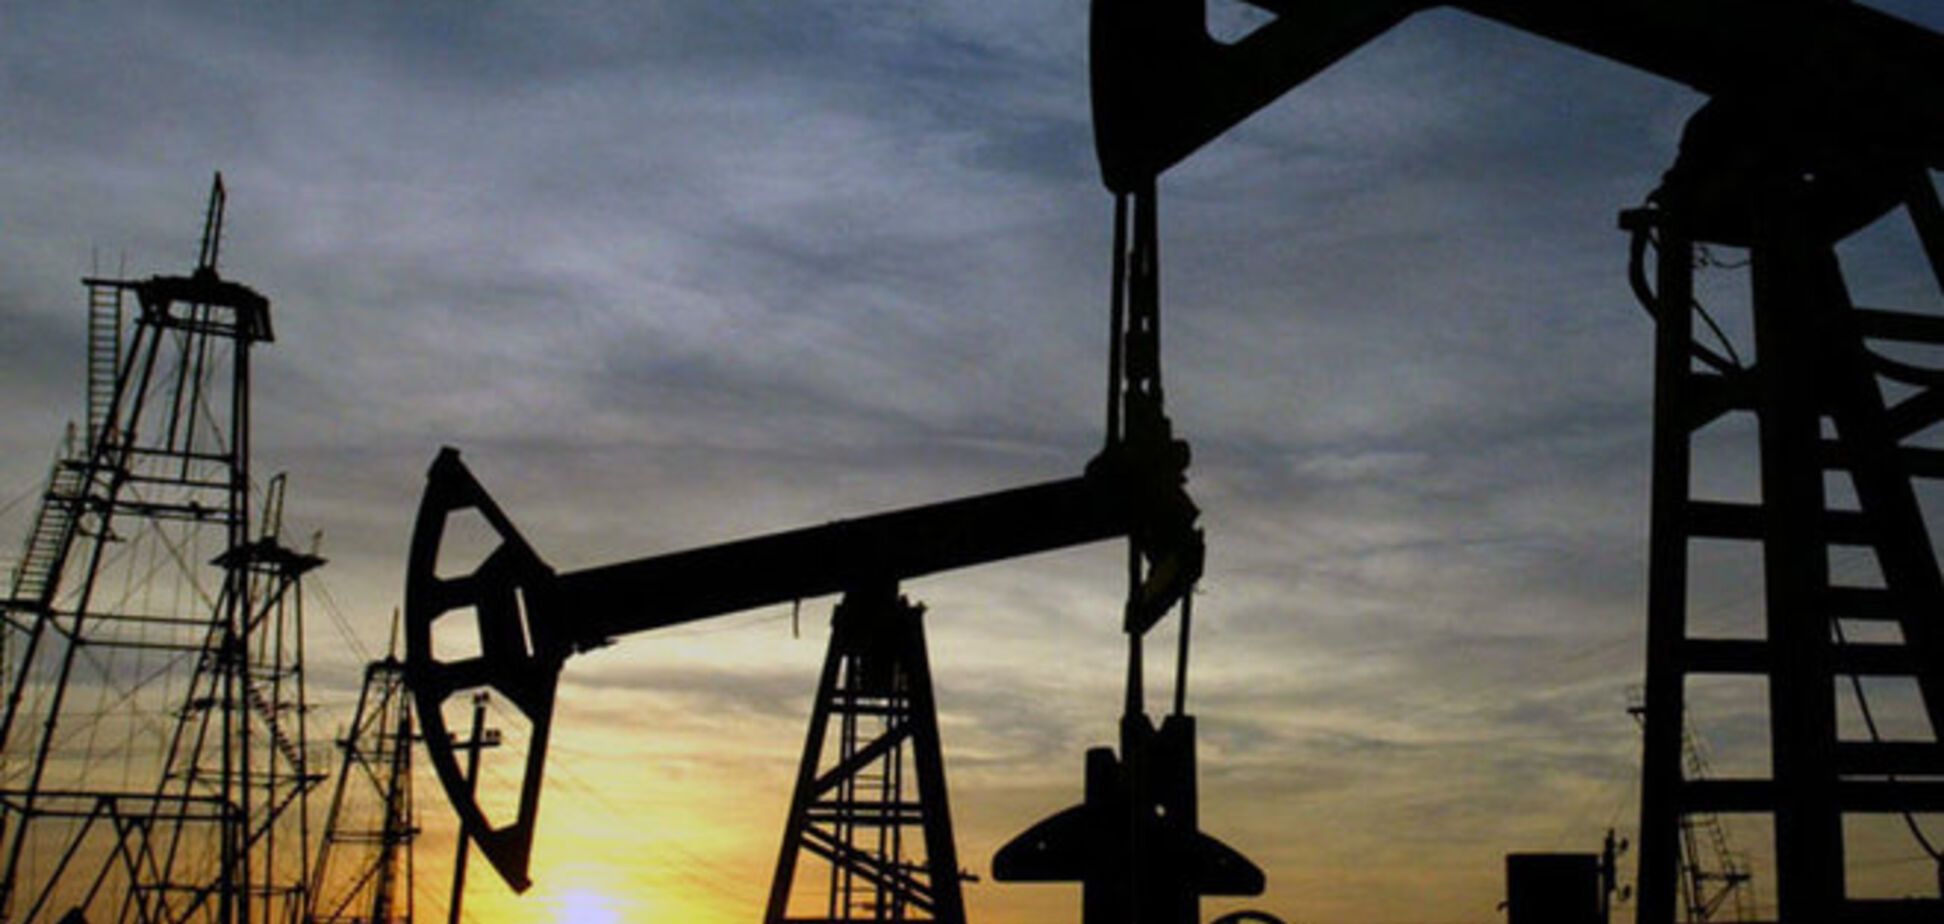 Кувейт заложил в бюджет на 2015 год цену на нефть $55-60 за баррель - WSJ